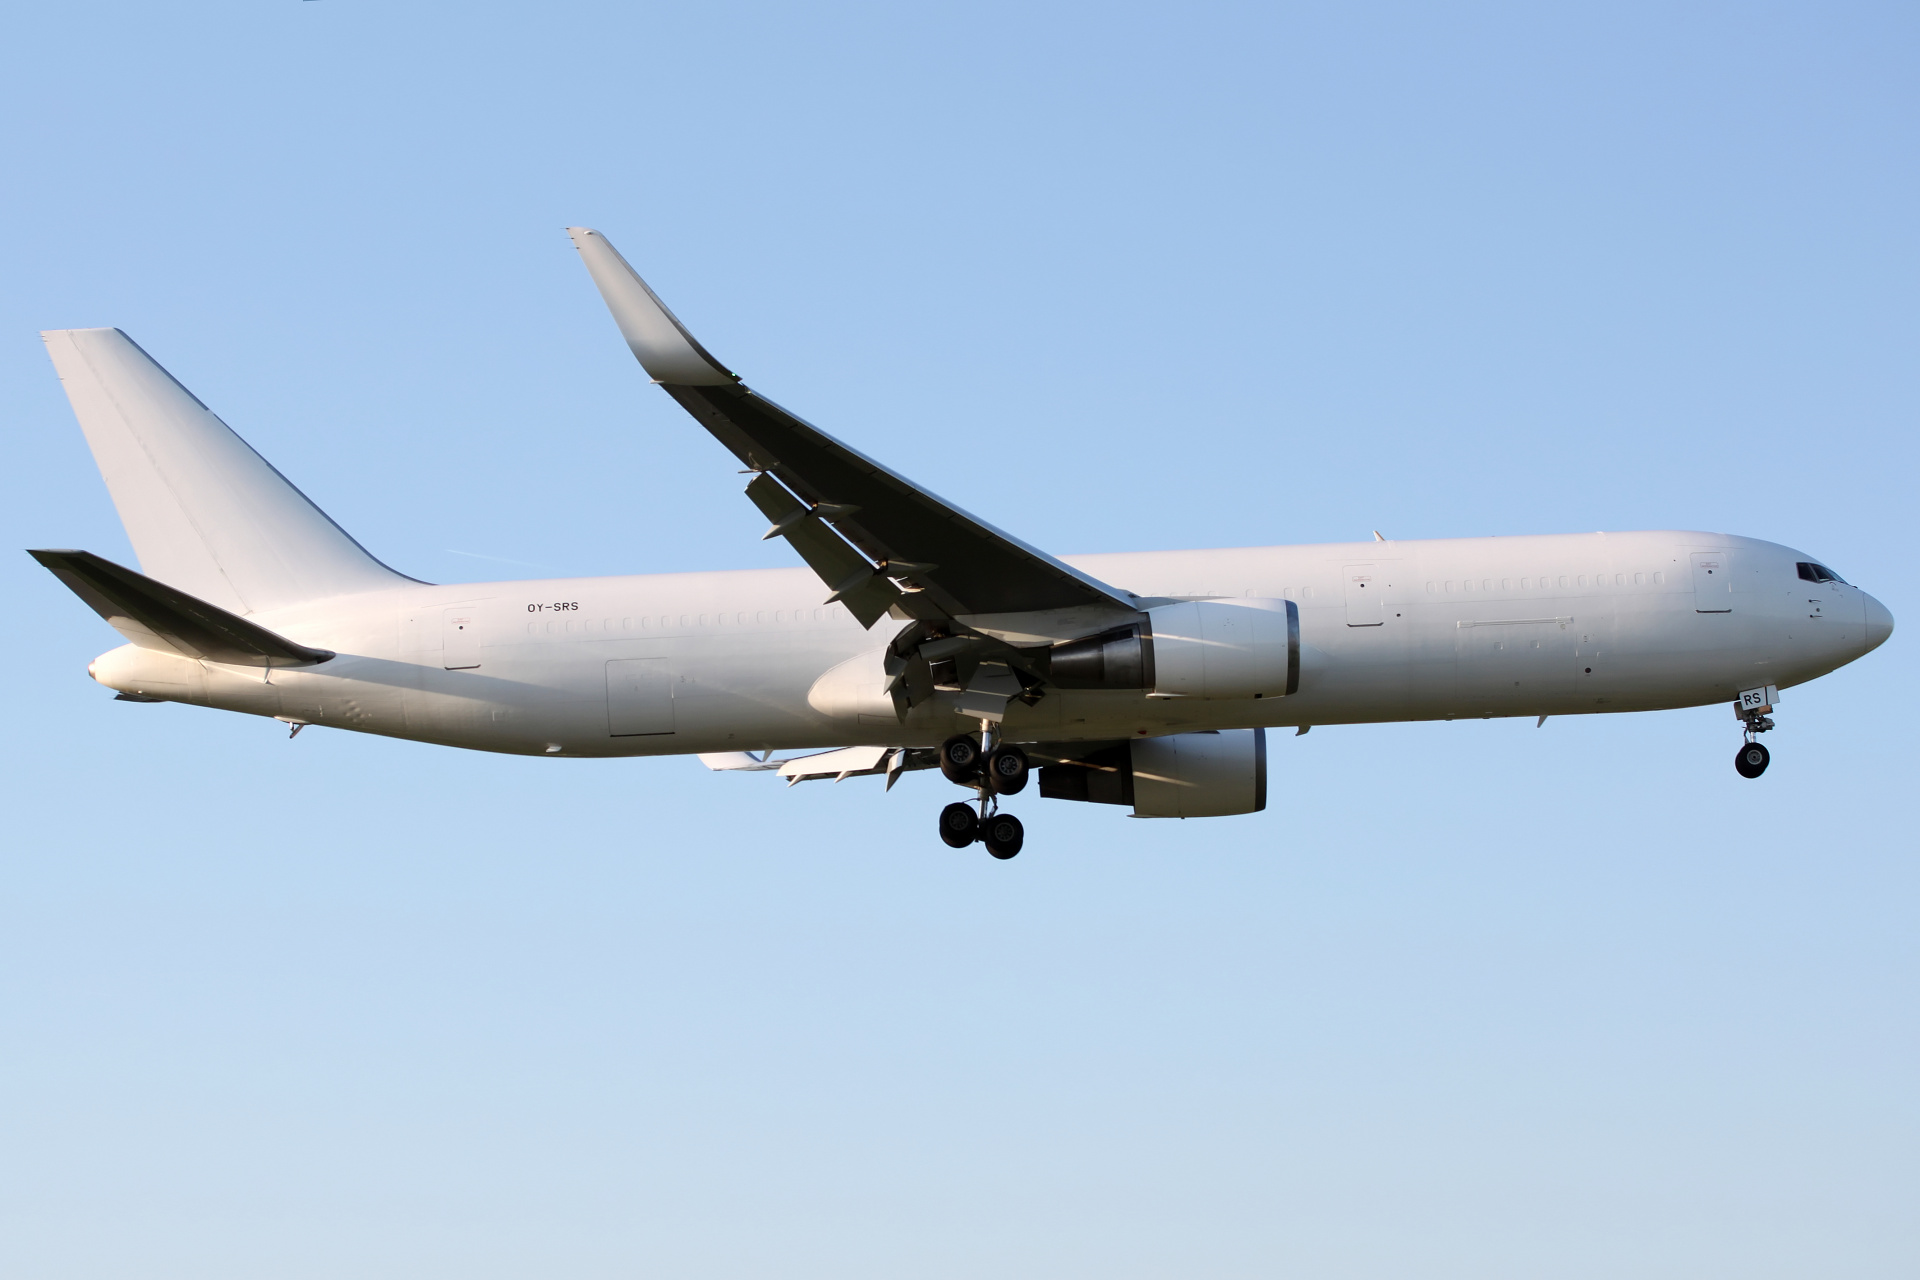 BCF, OY-SRS, Maersk Star Air (Aircraft » EPWA Spotting » Boeing 767-300F)